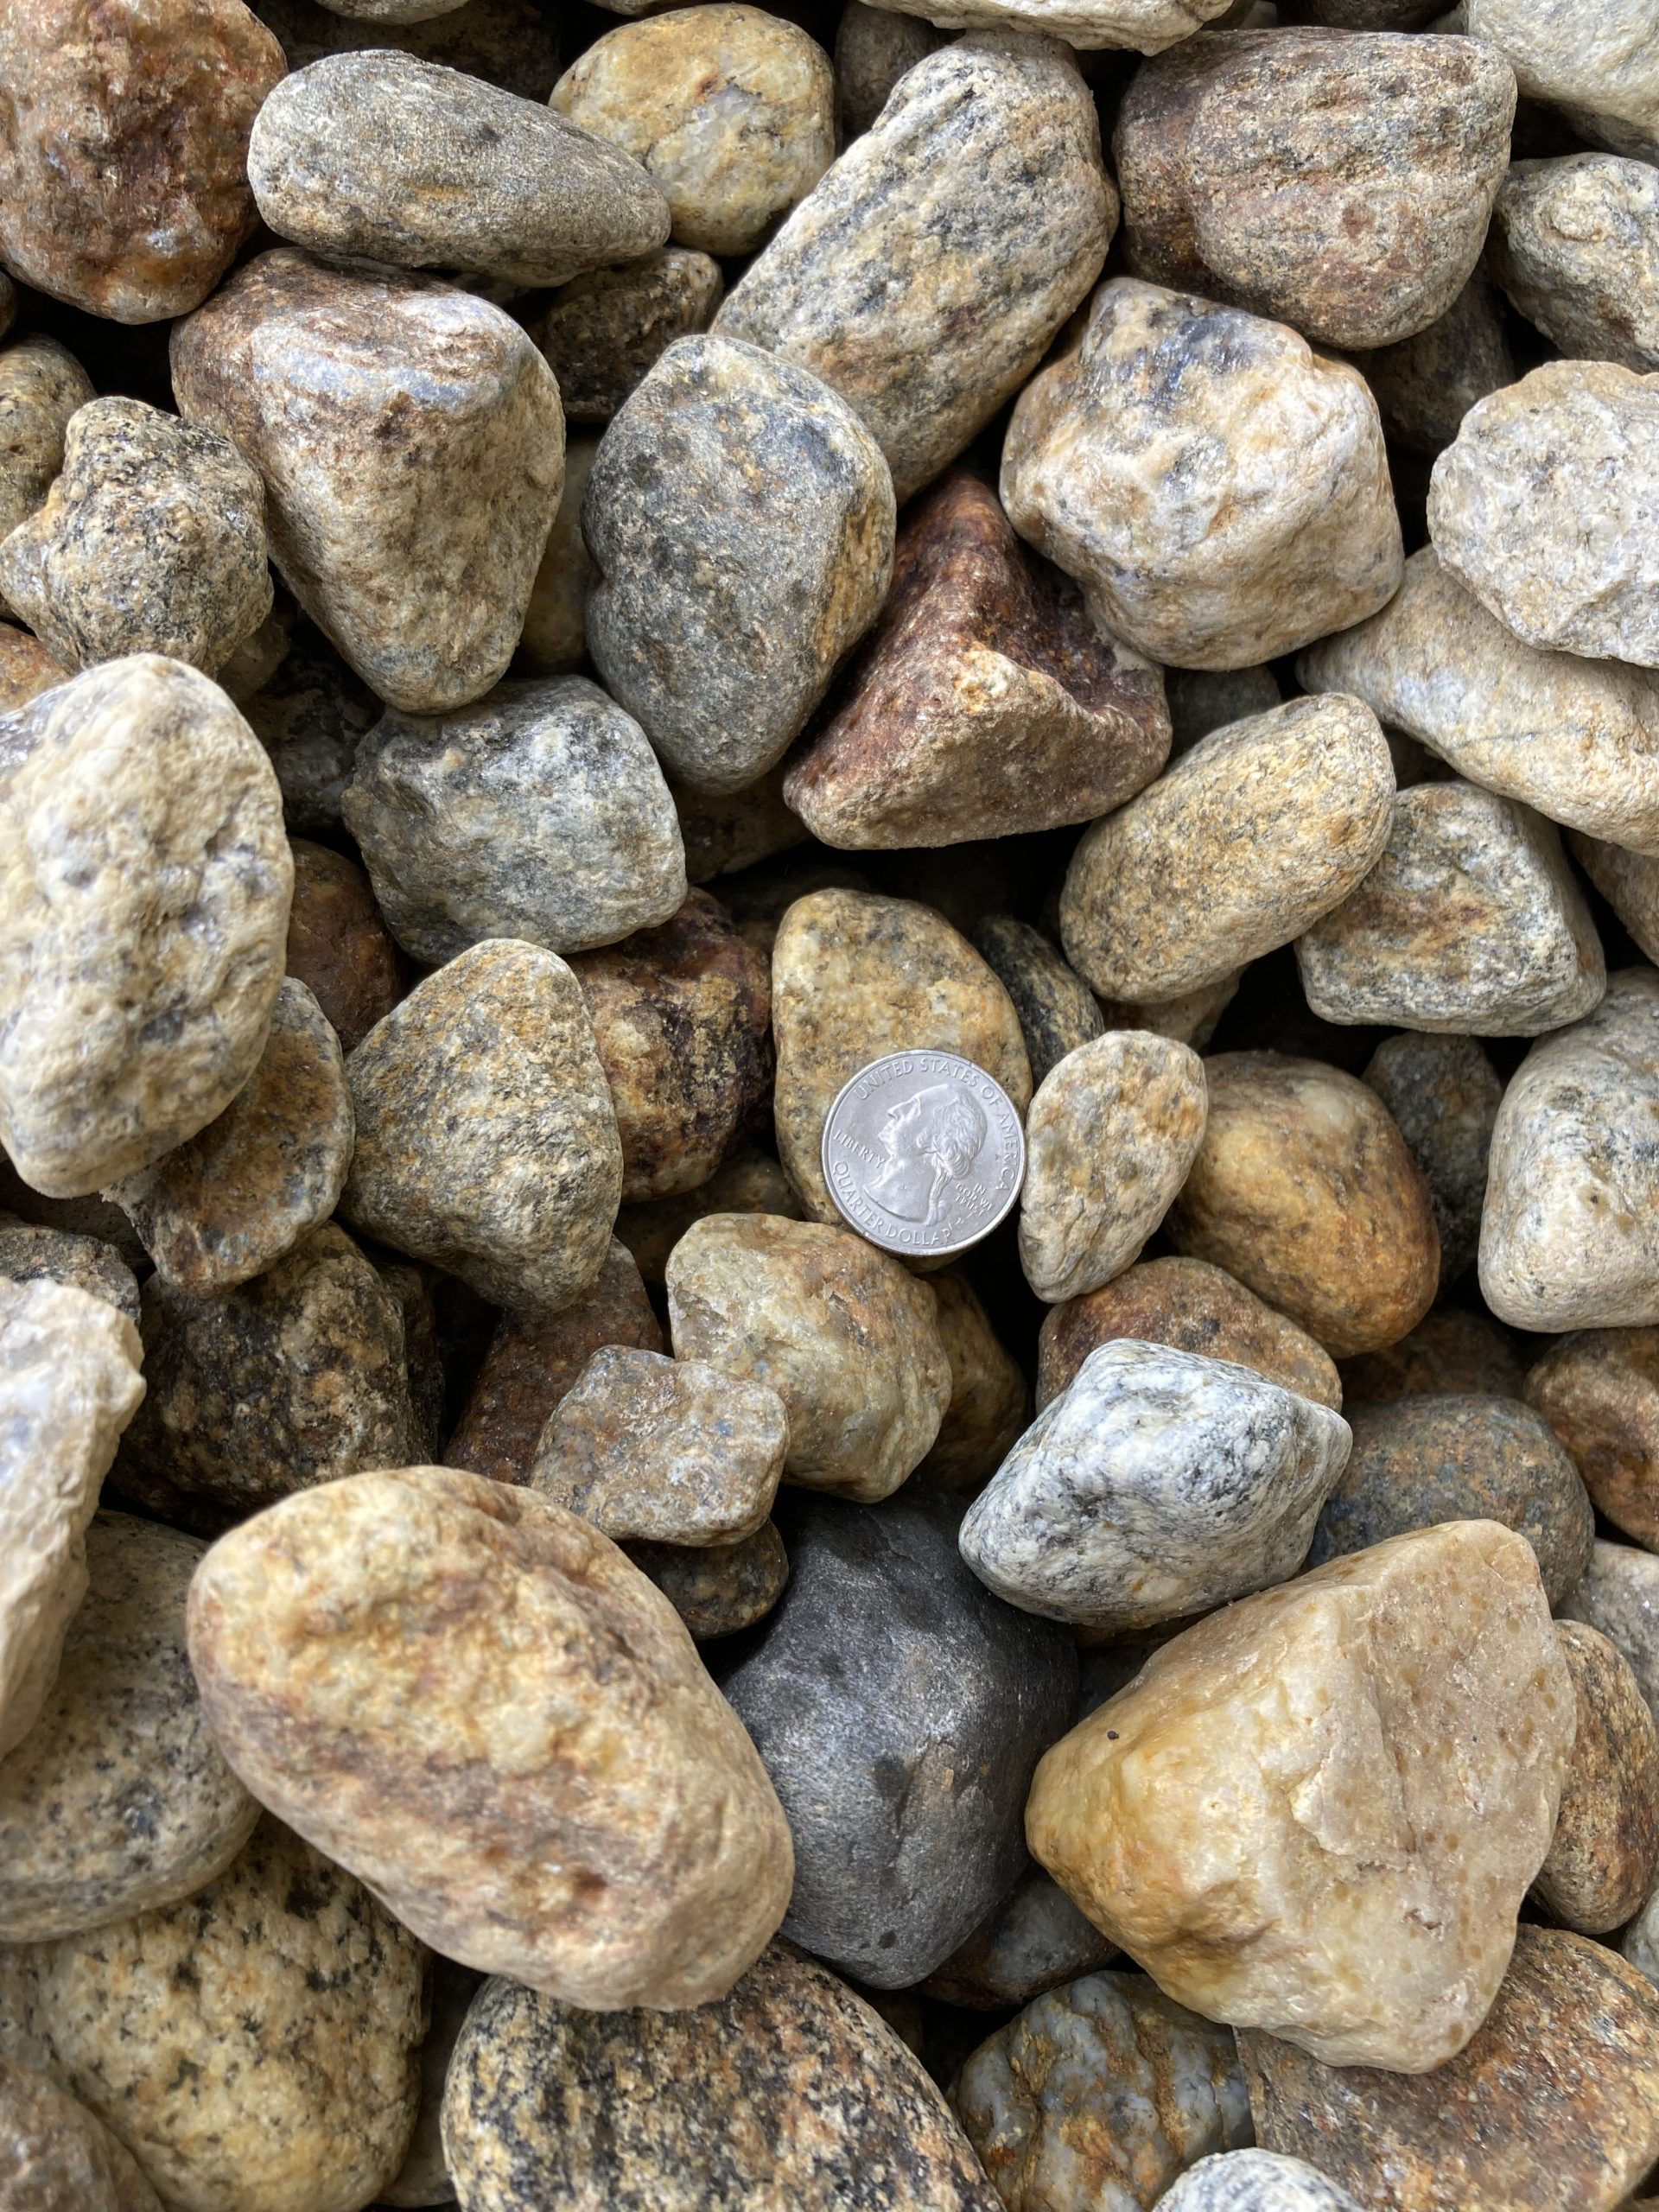 Brown round rocks